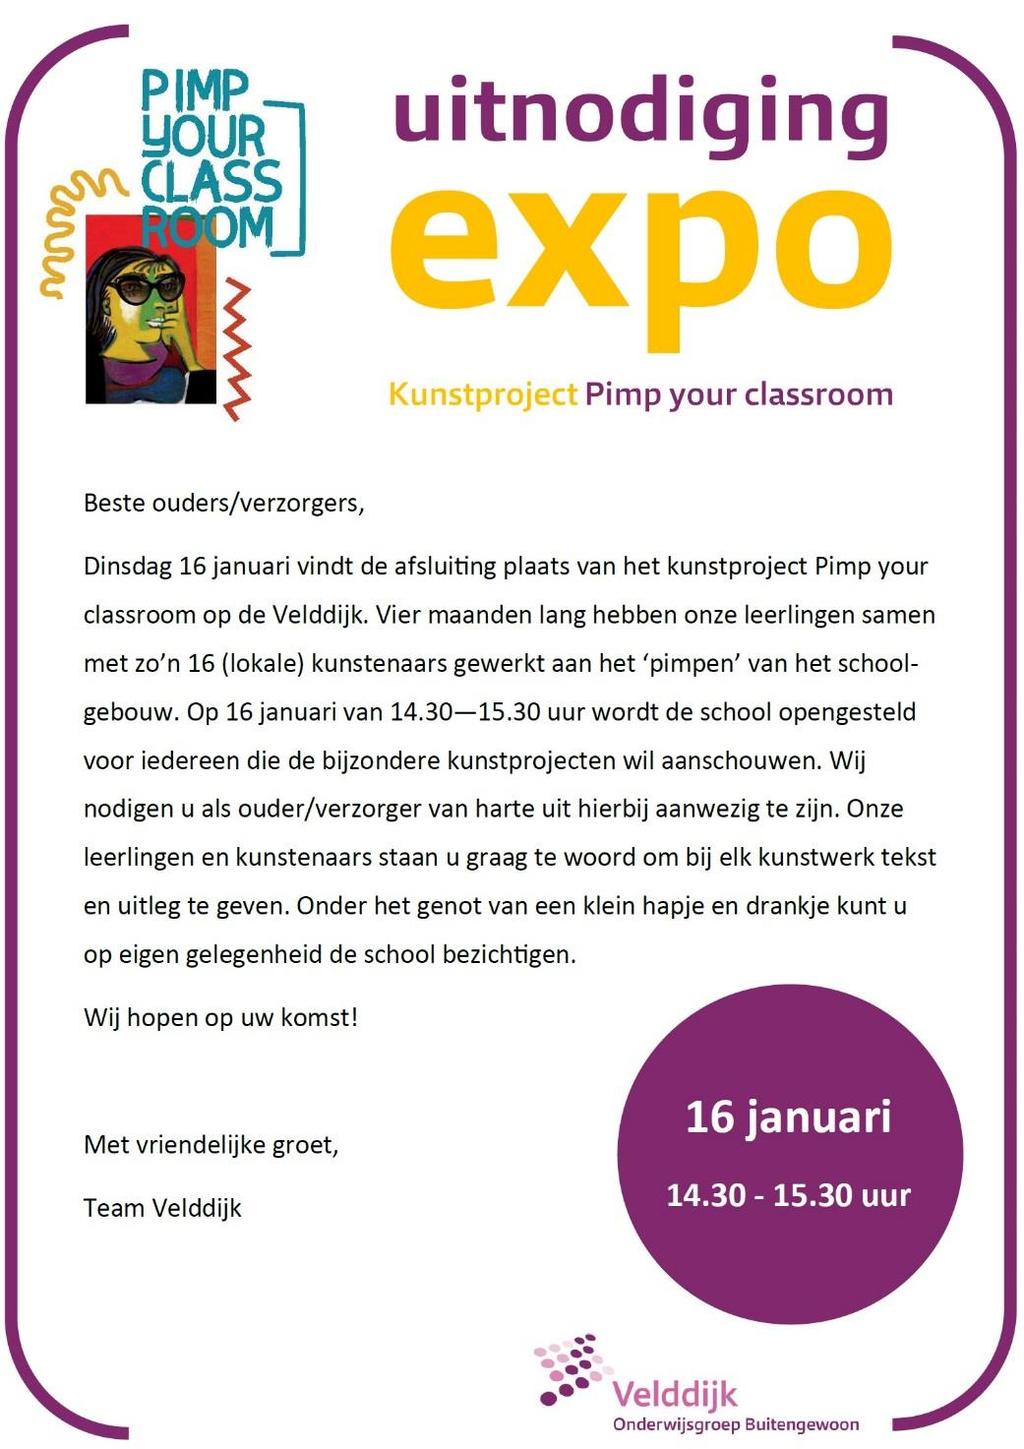 Uitnodiging expo kunstproject Pimp your Classroom Dinsdag 16 januari 2018 vindt de afsluiting plaats van kunstproject Pimp your Classroom.